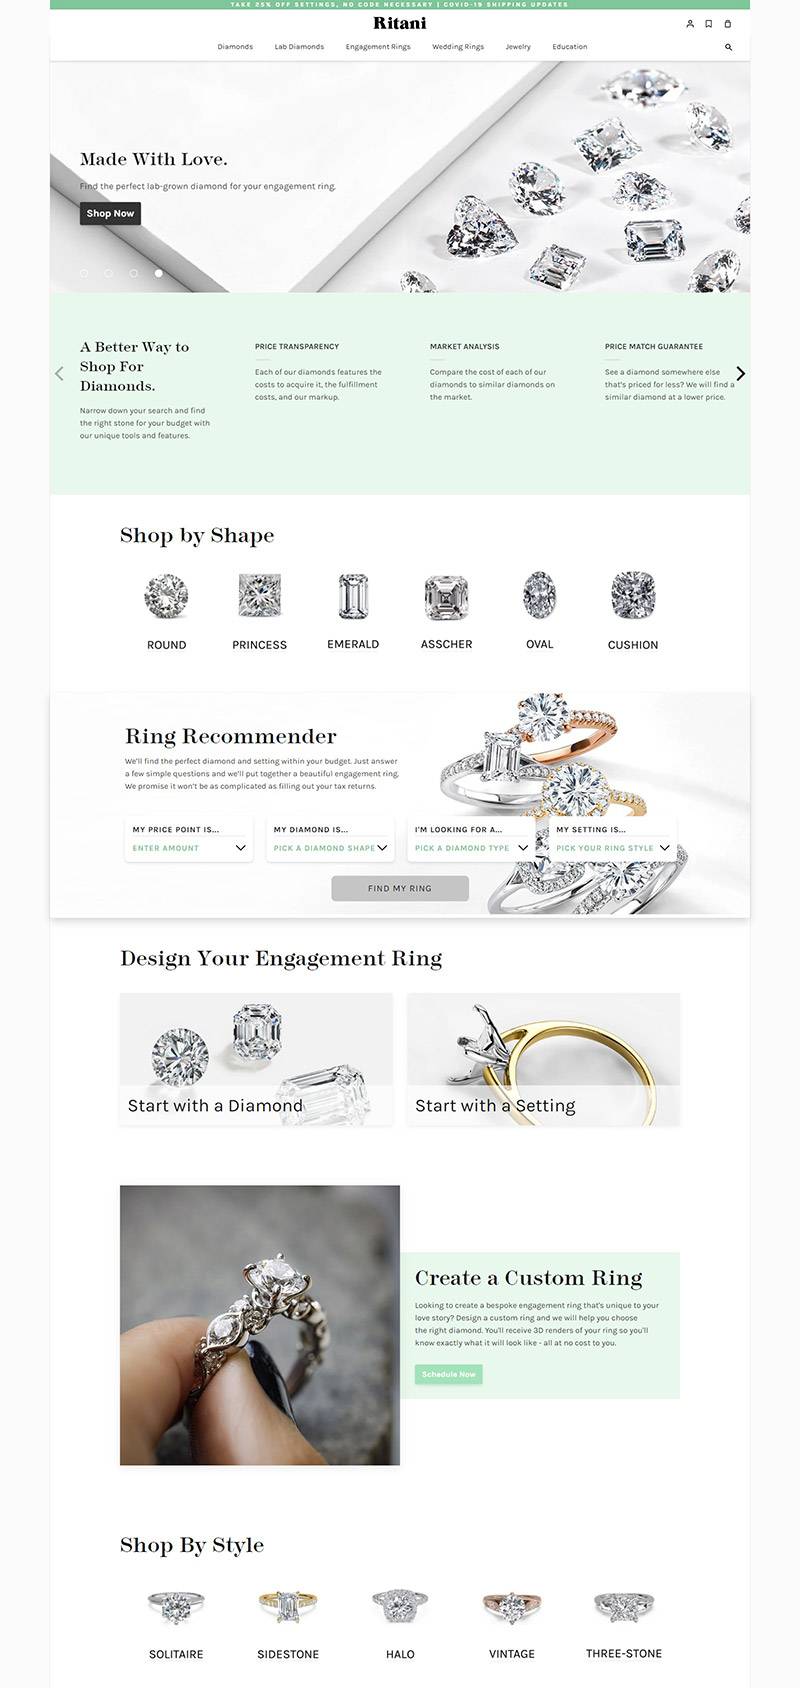 Ritani 美国高端珠宝品牌网站